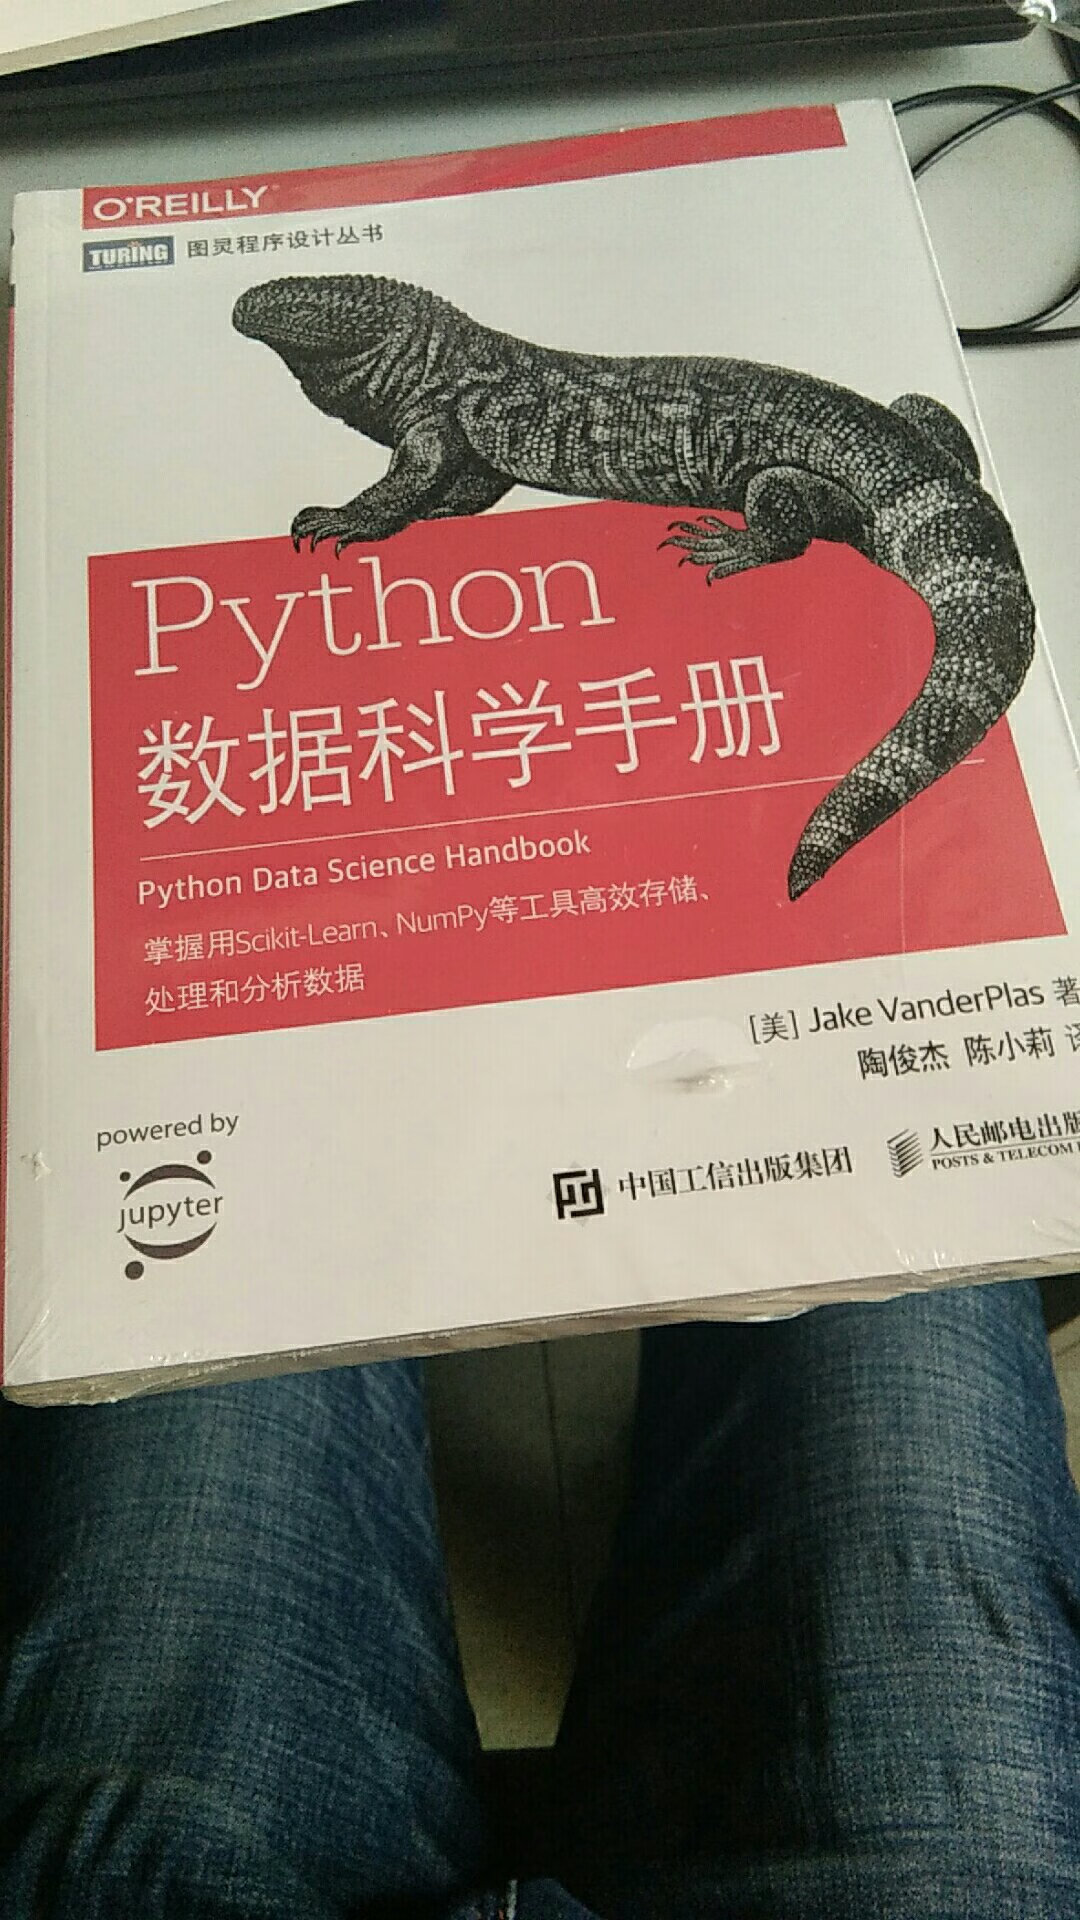 这五星给物流，初看书籍包装不错，没有损坏，之后等我看了内容再说，毕竟我还刚接触Python